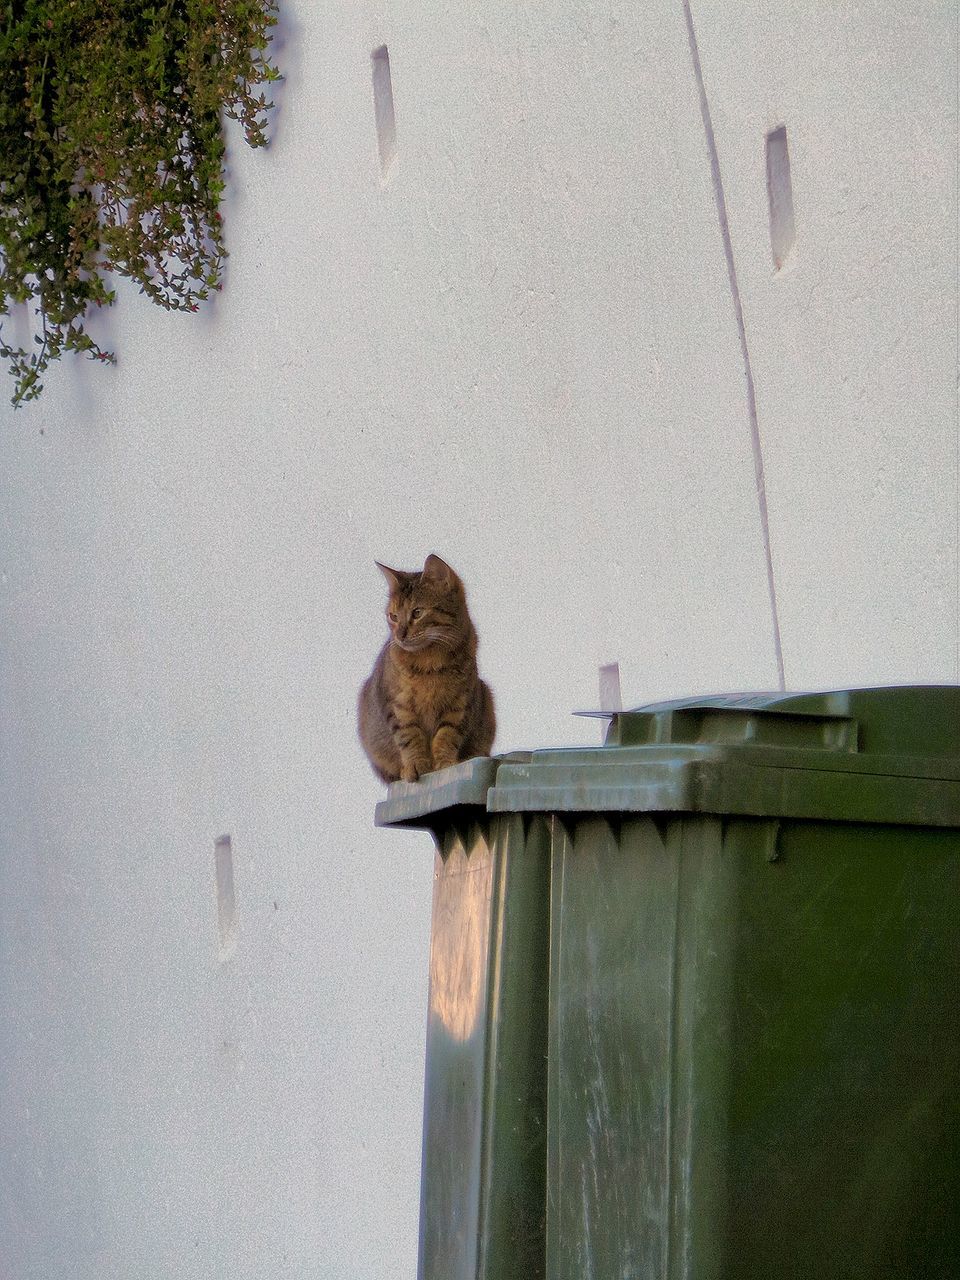 Cat sitting on garbage bin against sky